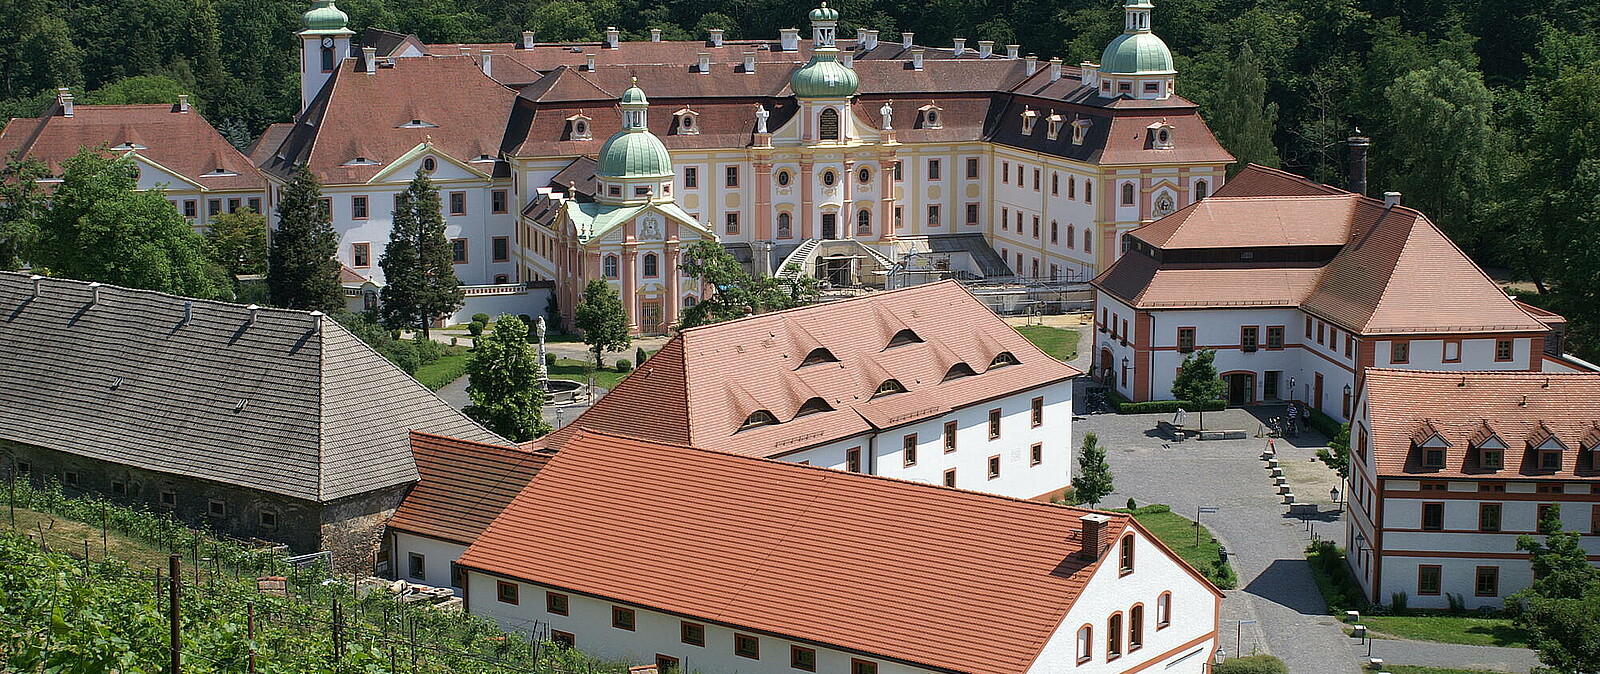 Im Neißetal, circa 20 km südlich von Görlitz, liegt ein beeindruckender Ort des Glaubens: die braocke Anlage der Zisterzienserinnenabteil Klosterstift St. Marienthal.